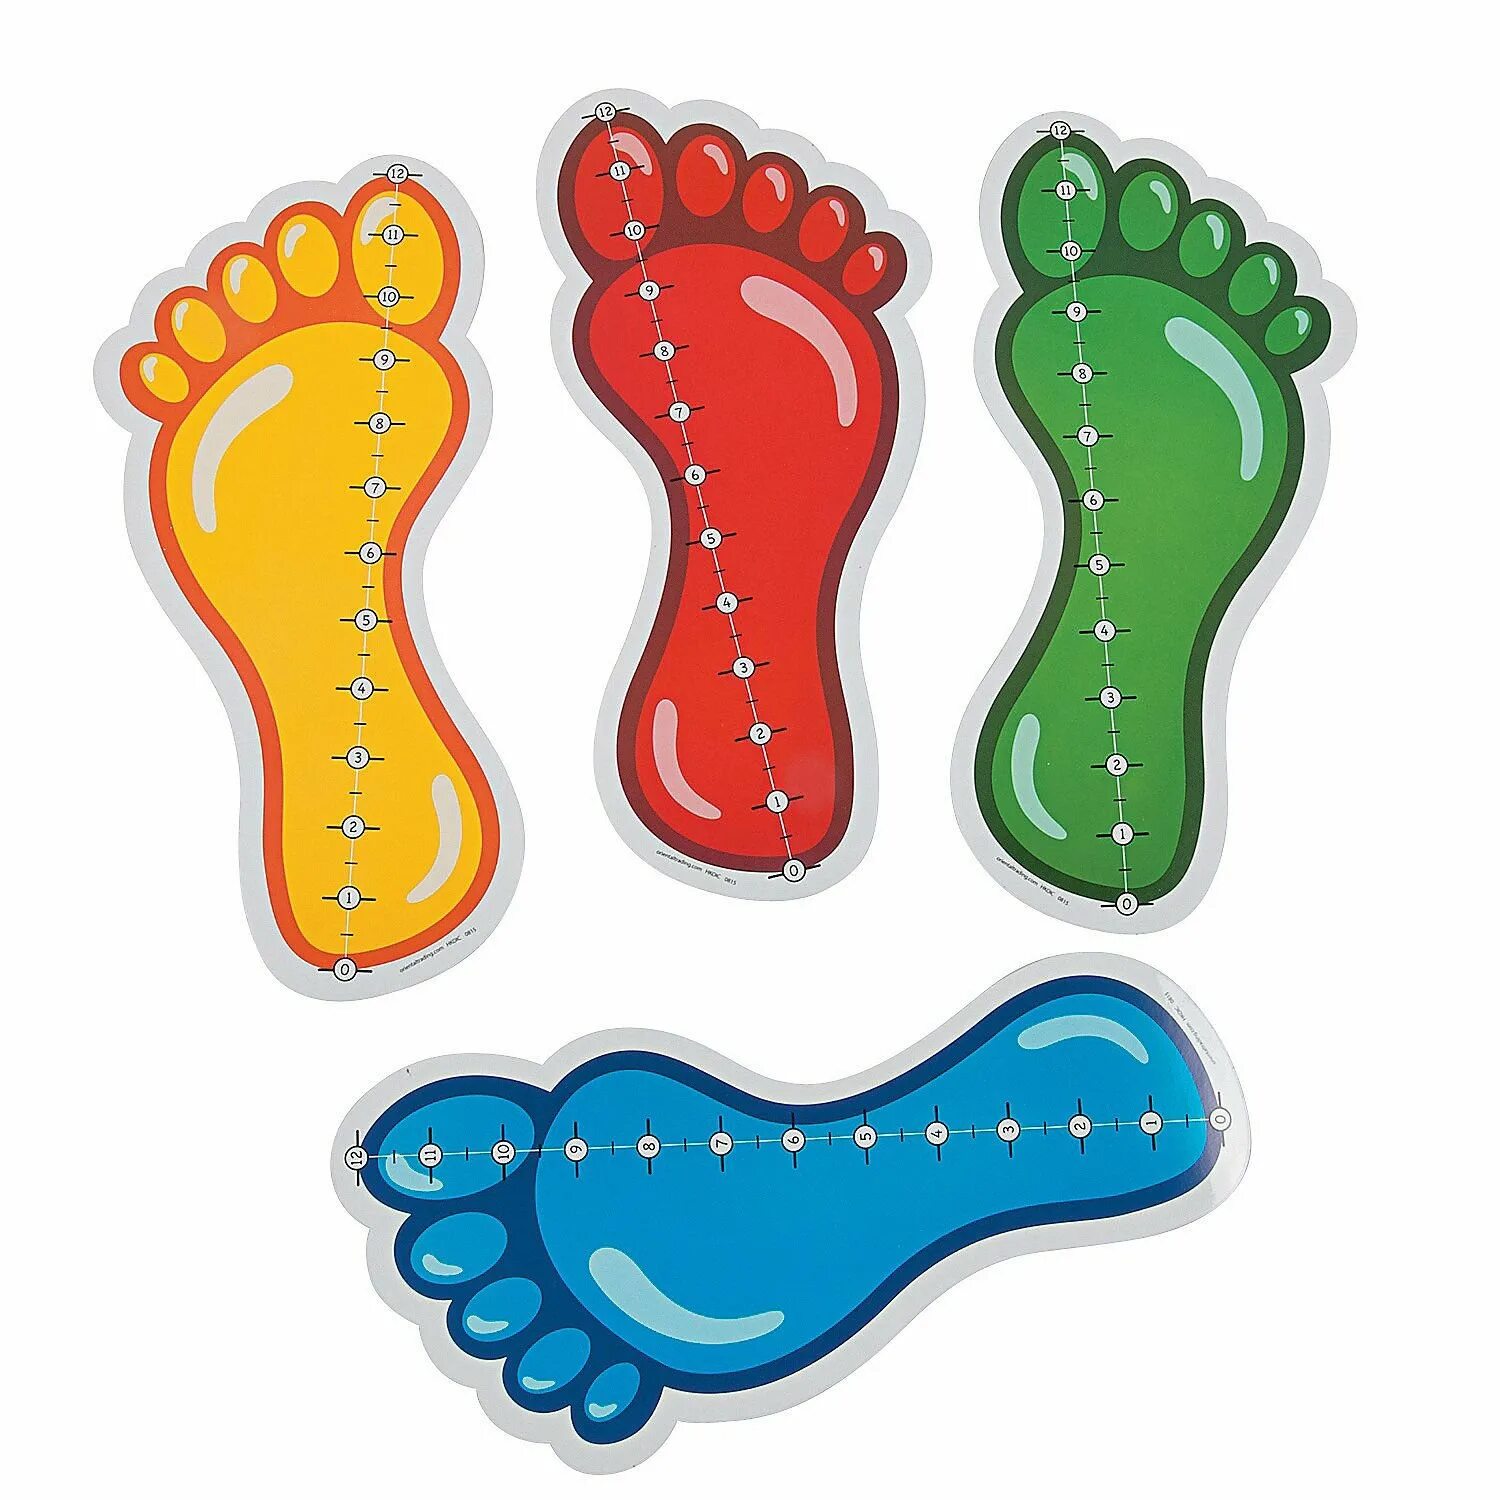 След играй. Следы ног. Следы стопы для детей. Следы для игры с детьми. Цветной отпечаток для детей ноги.